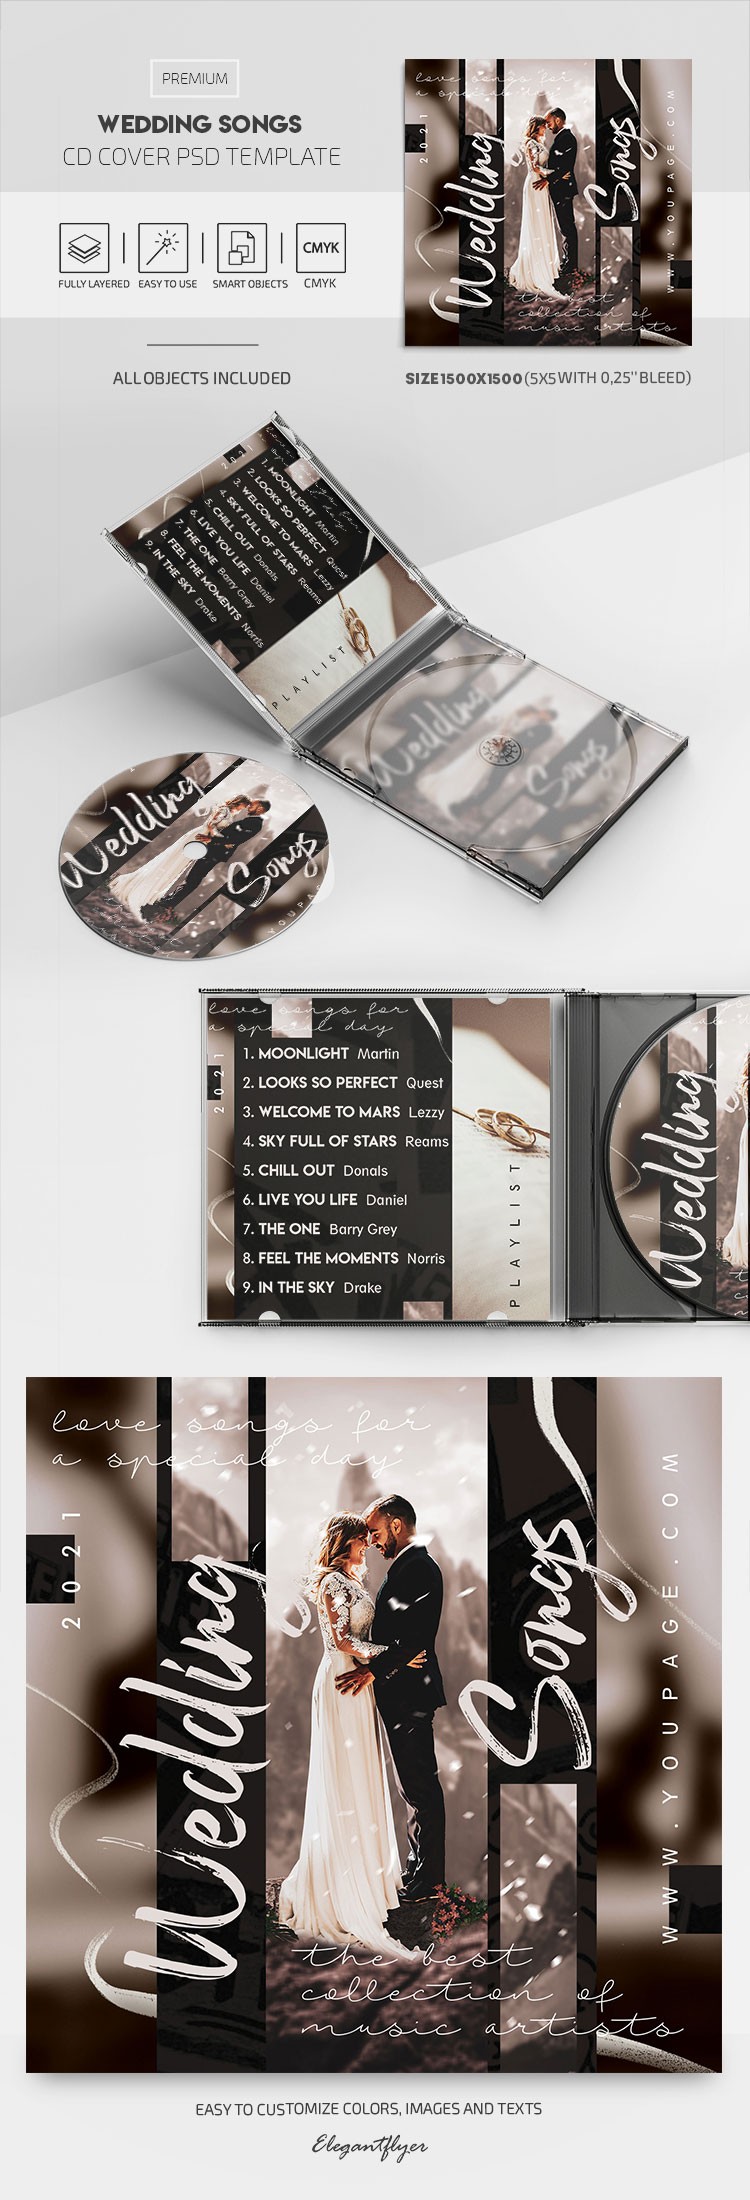 Portada del CD de Canciones de Boda by ElegantFlyer